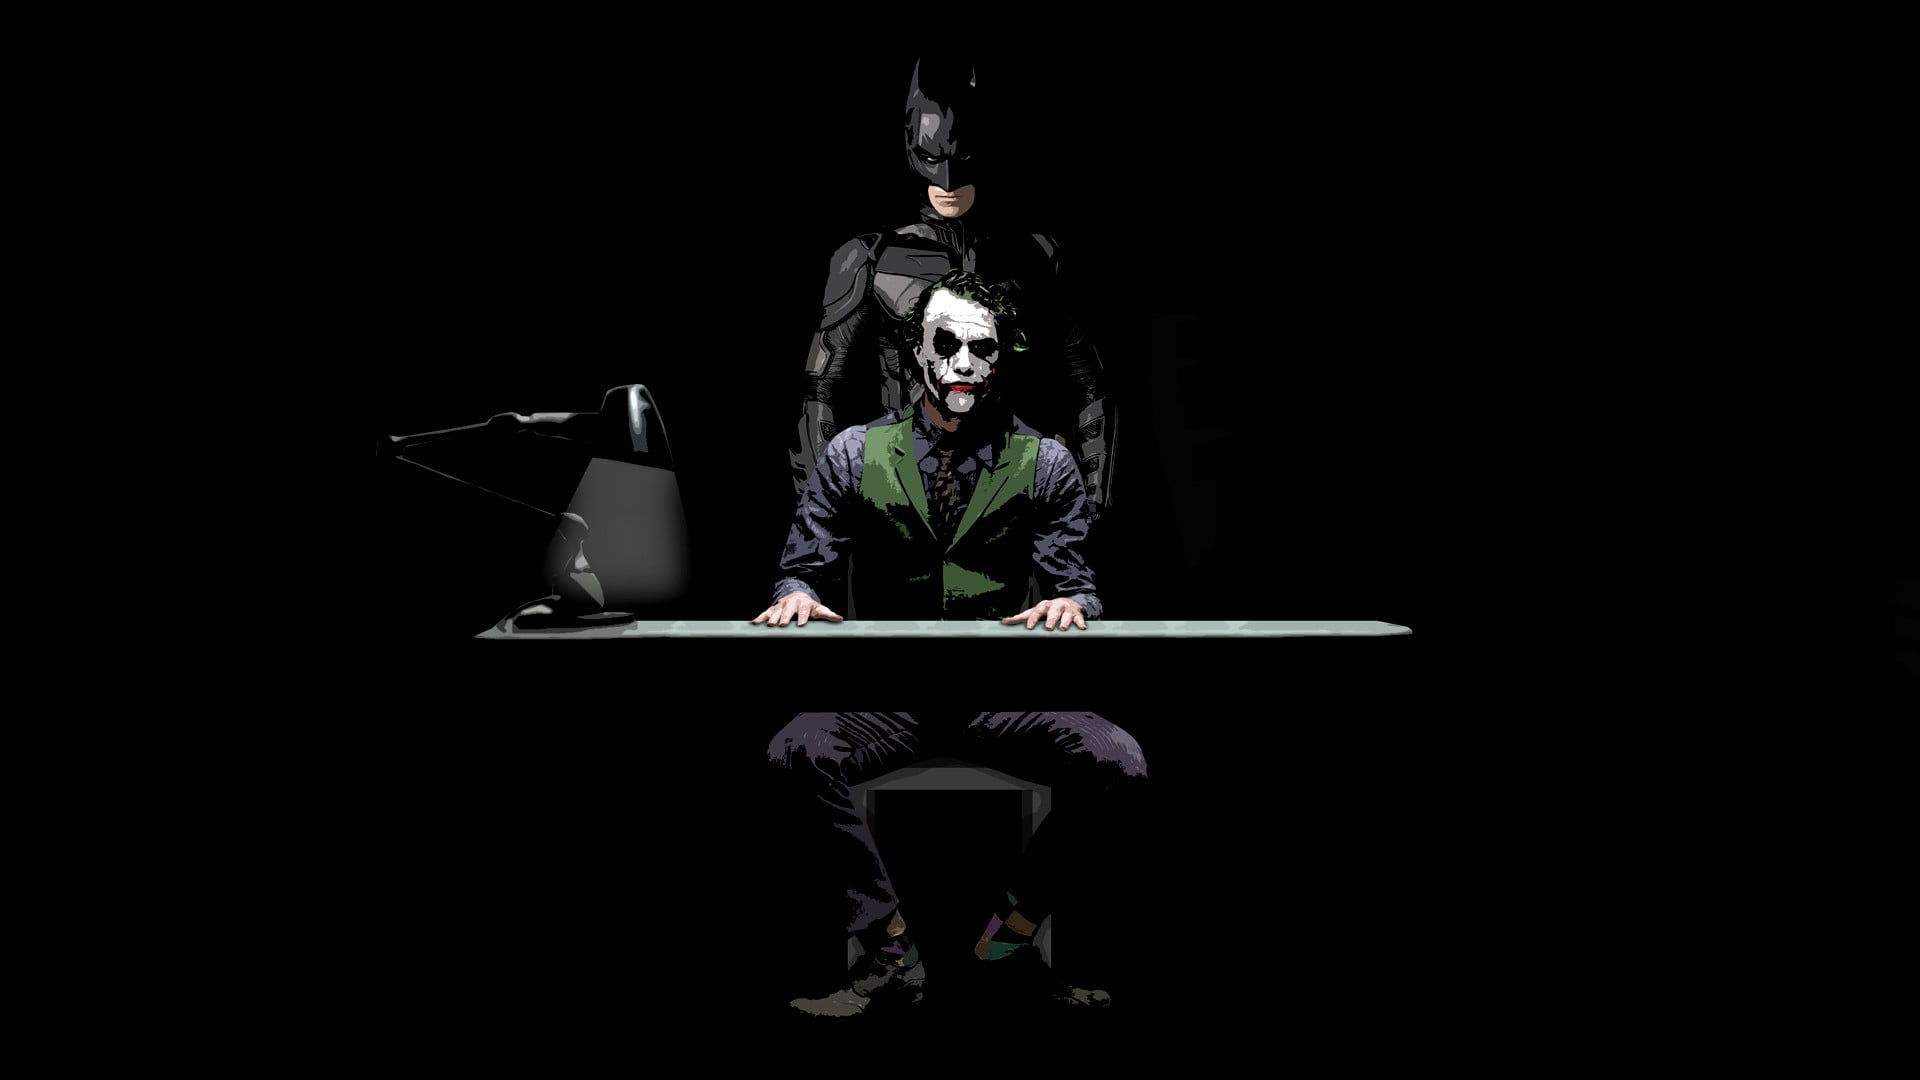 Dark Knight Joker Wallpaper Hd For Android